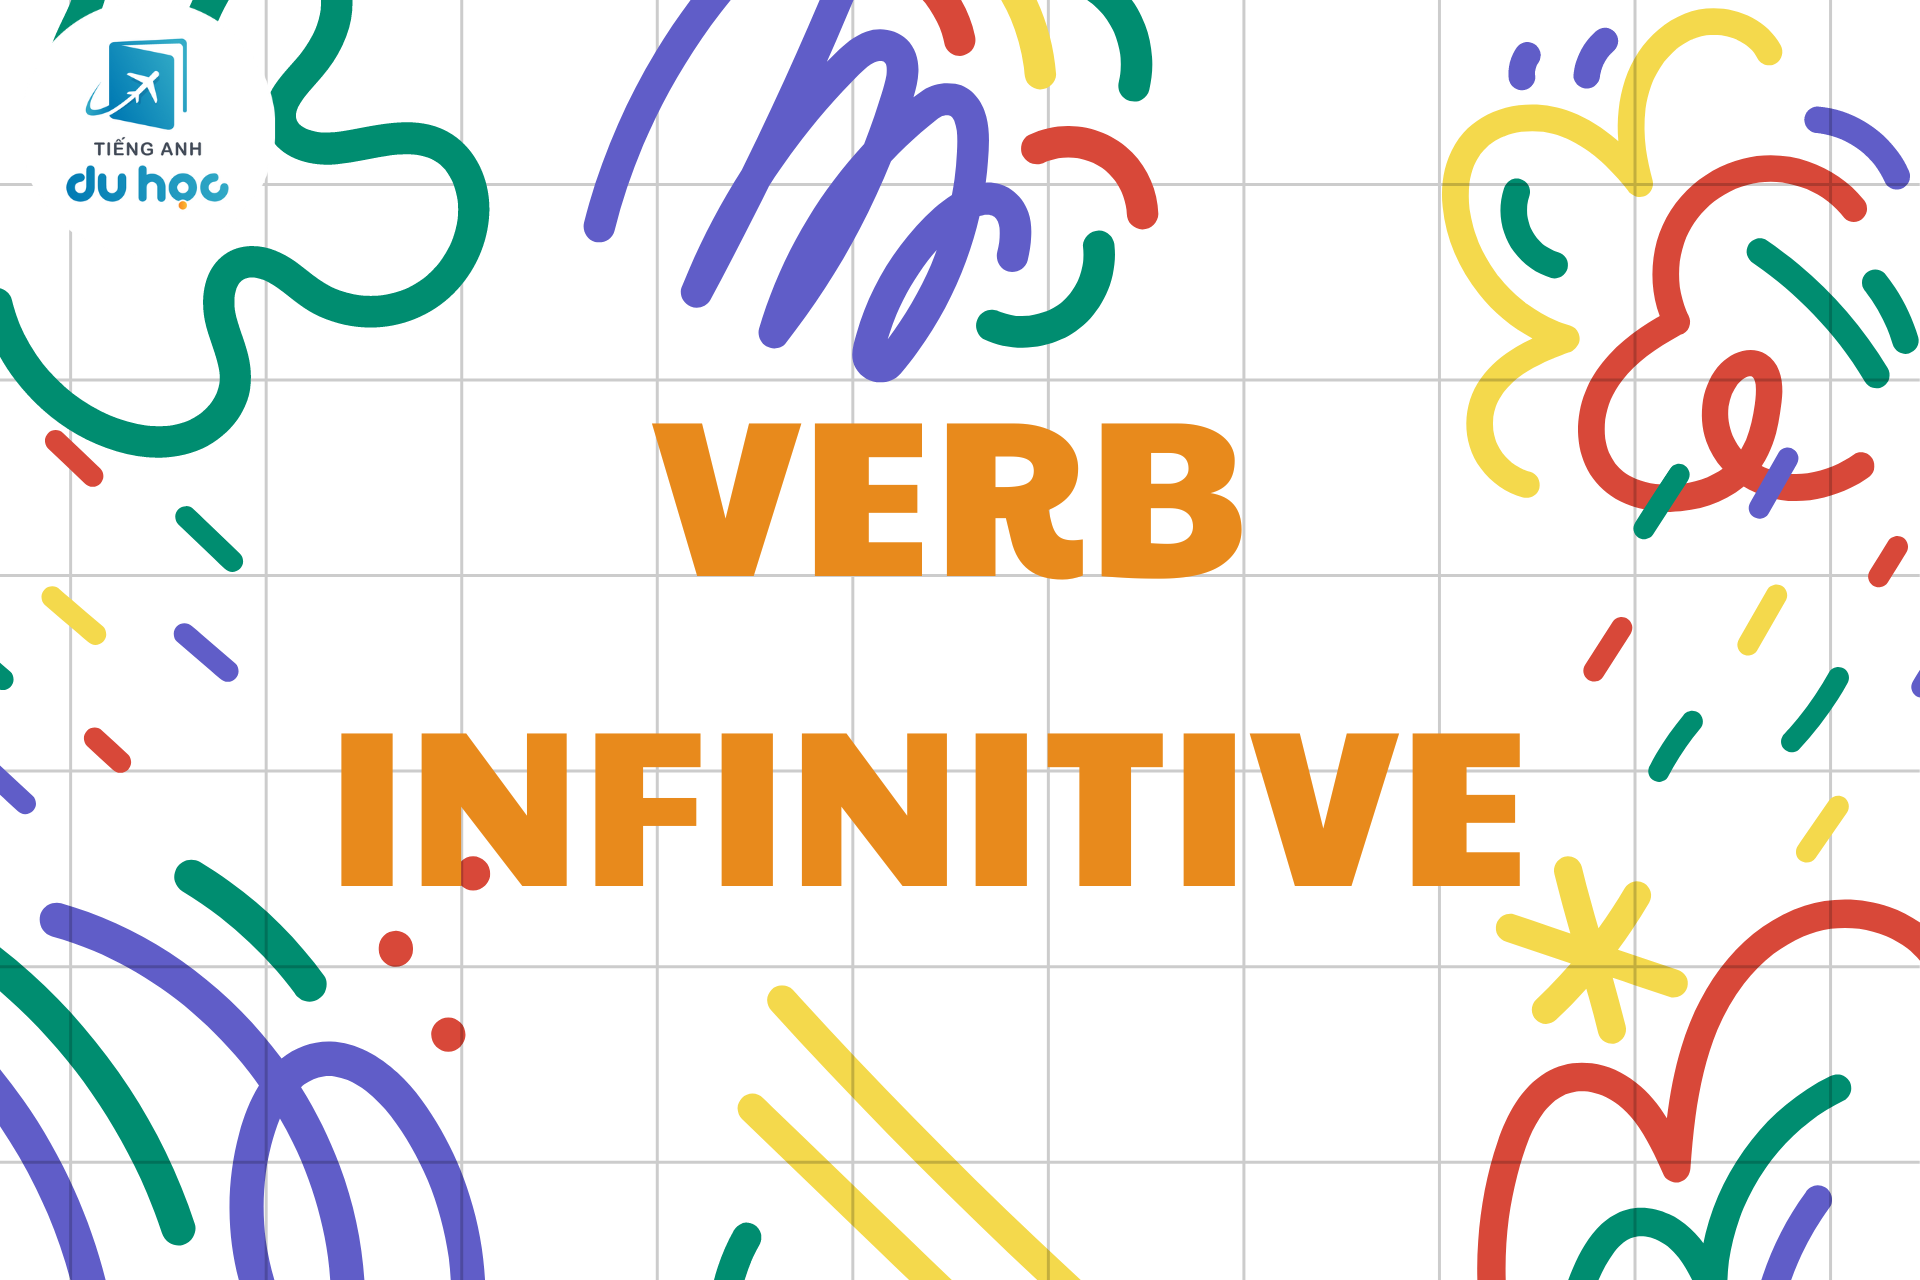 Verb infinitive là gì